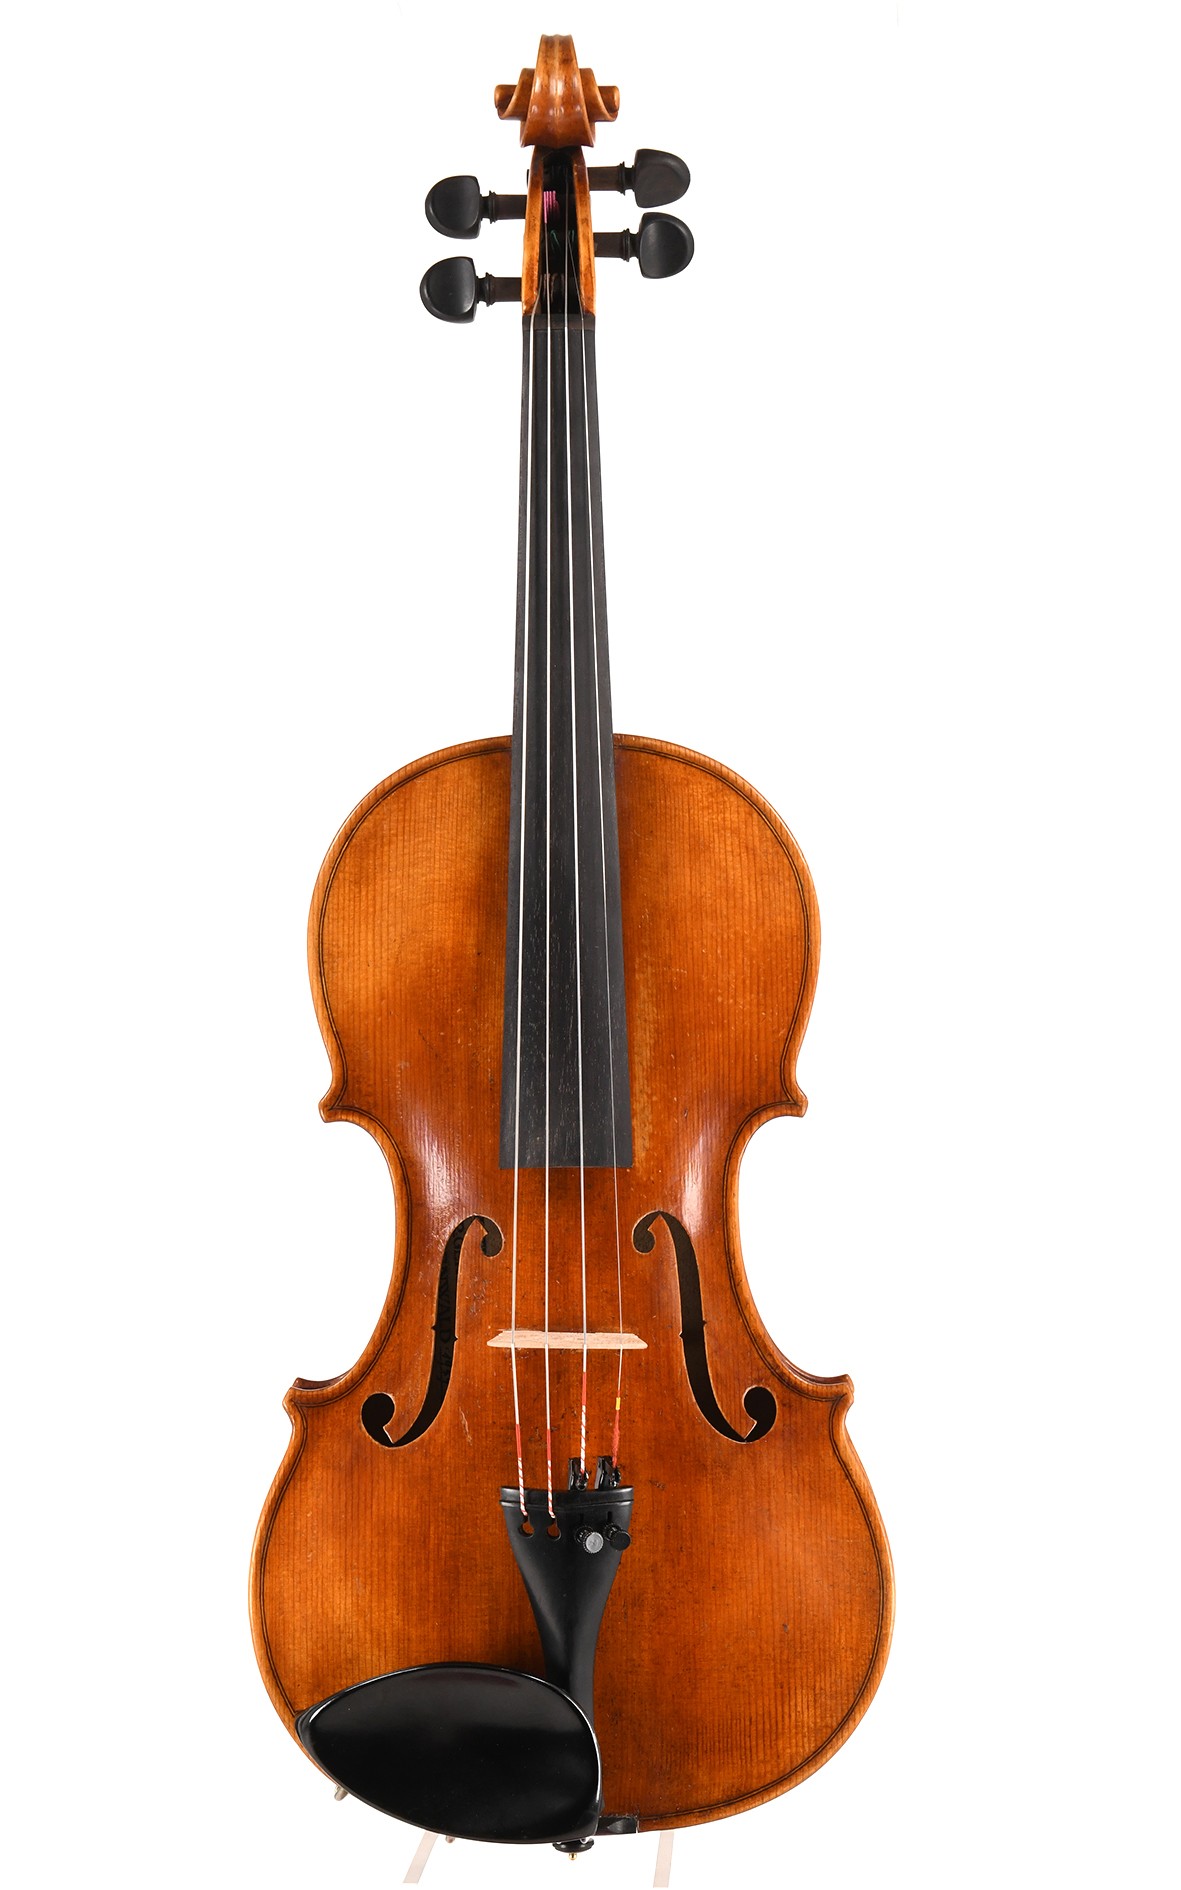 米滕瓦尔德的小提琴，小提琴制作学校 1995年